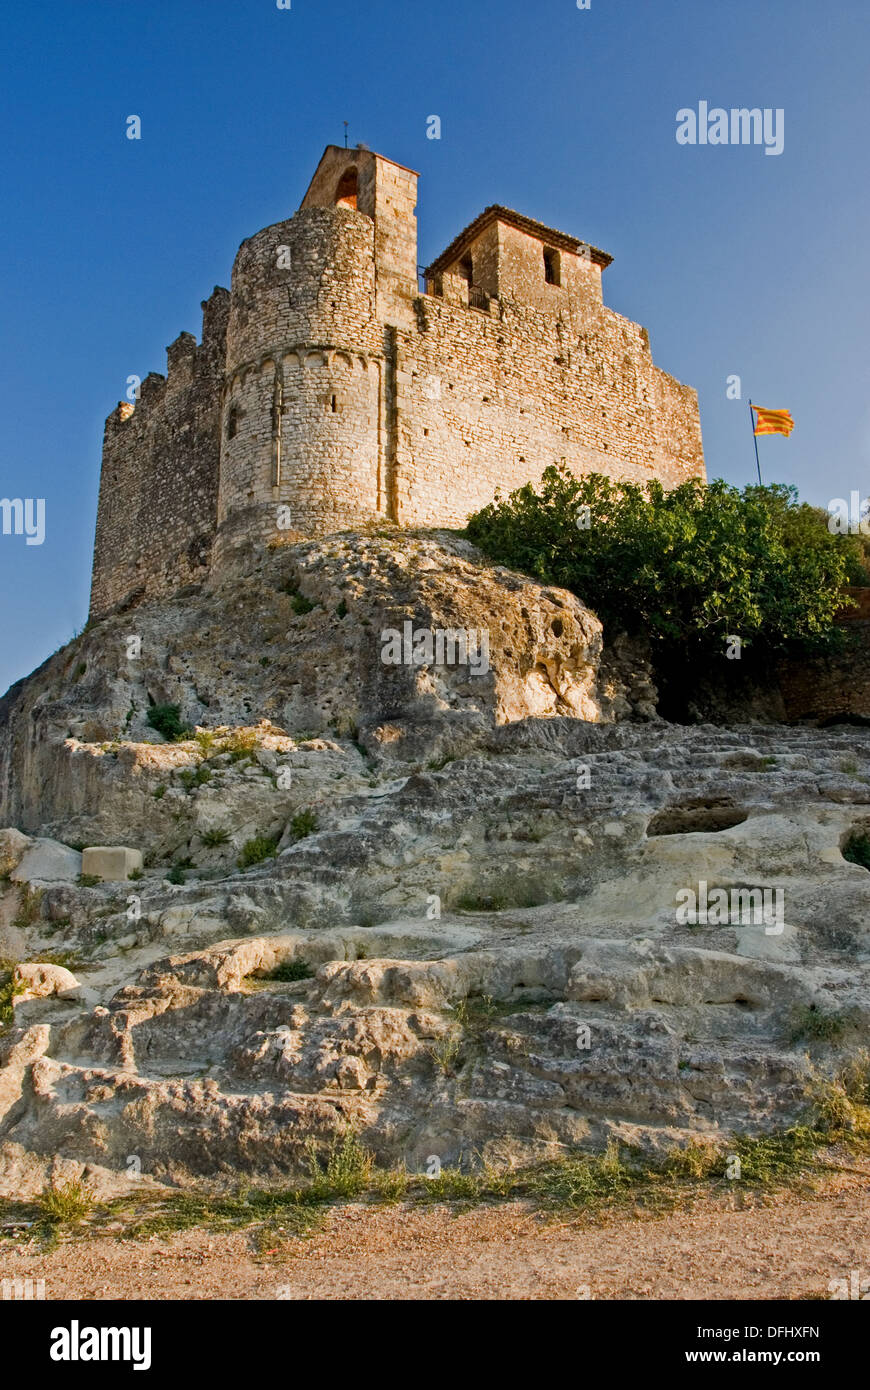 Castell Santa Creu steht auf einem Felsvorsprung mit Blick auf die Altstadt von L'Escala in der katalanischen Region von Spanien. Stockfoto